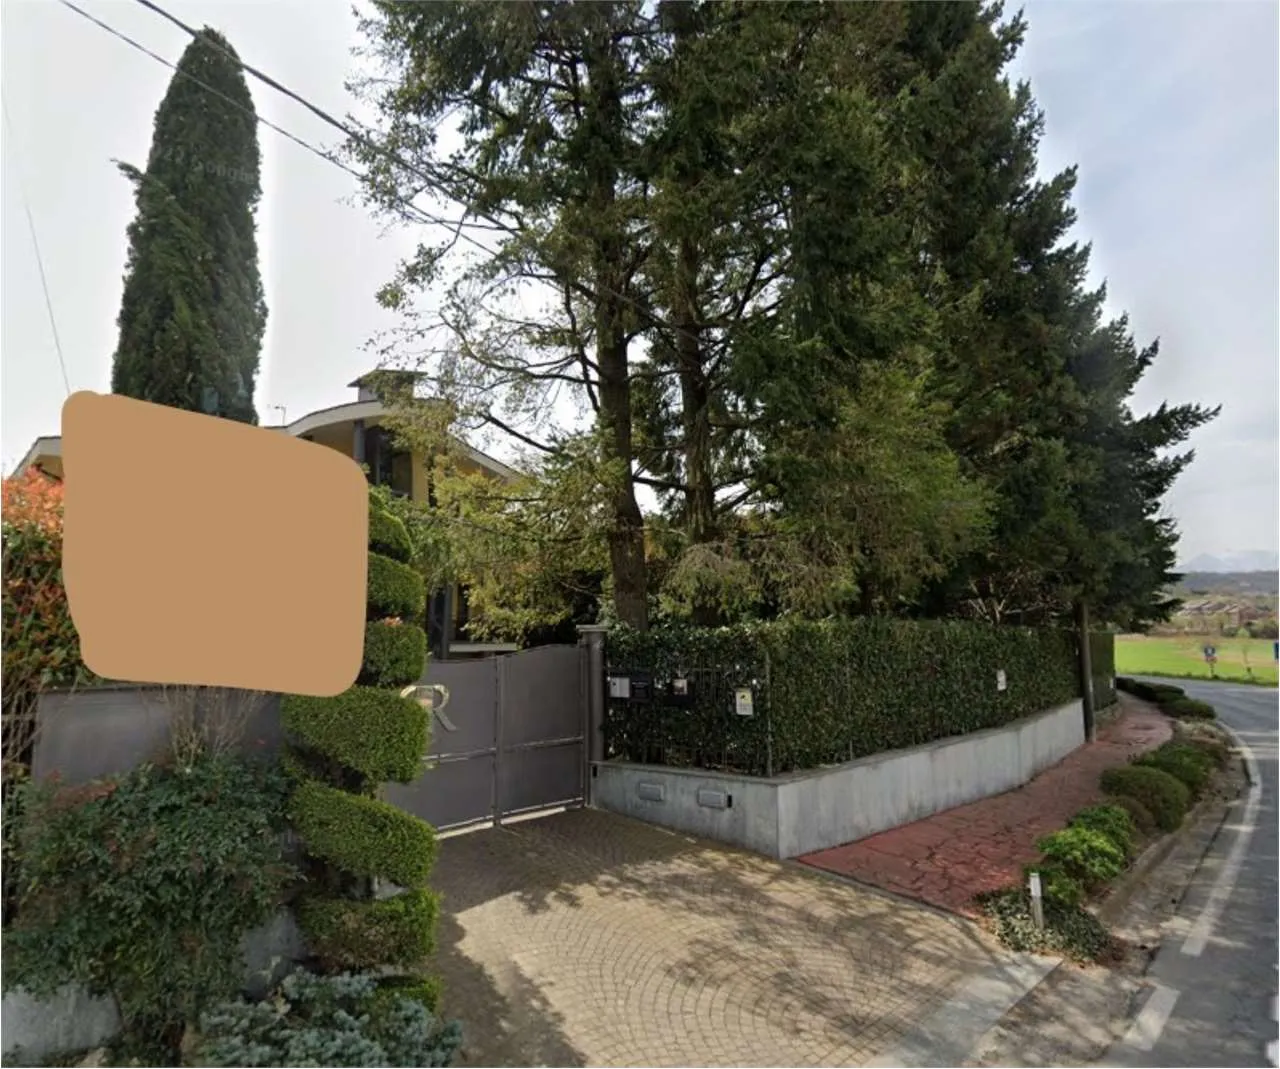 Immagine per Villa in asta a Rosta via Buttigliera Alta 41